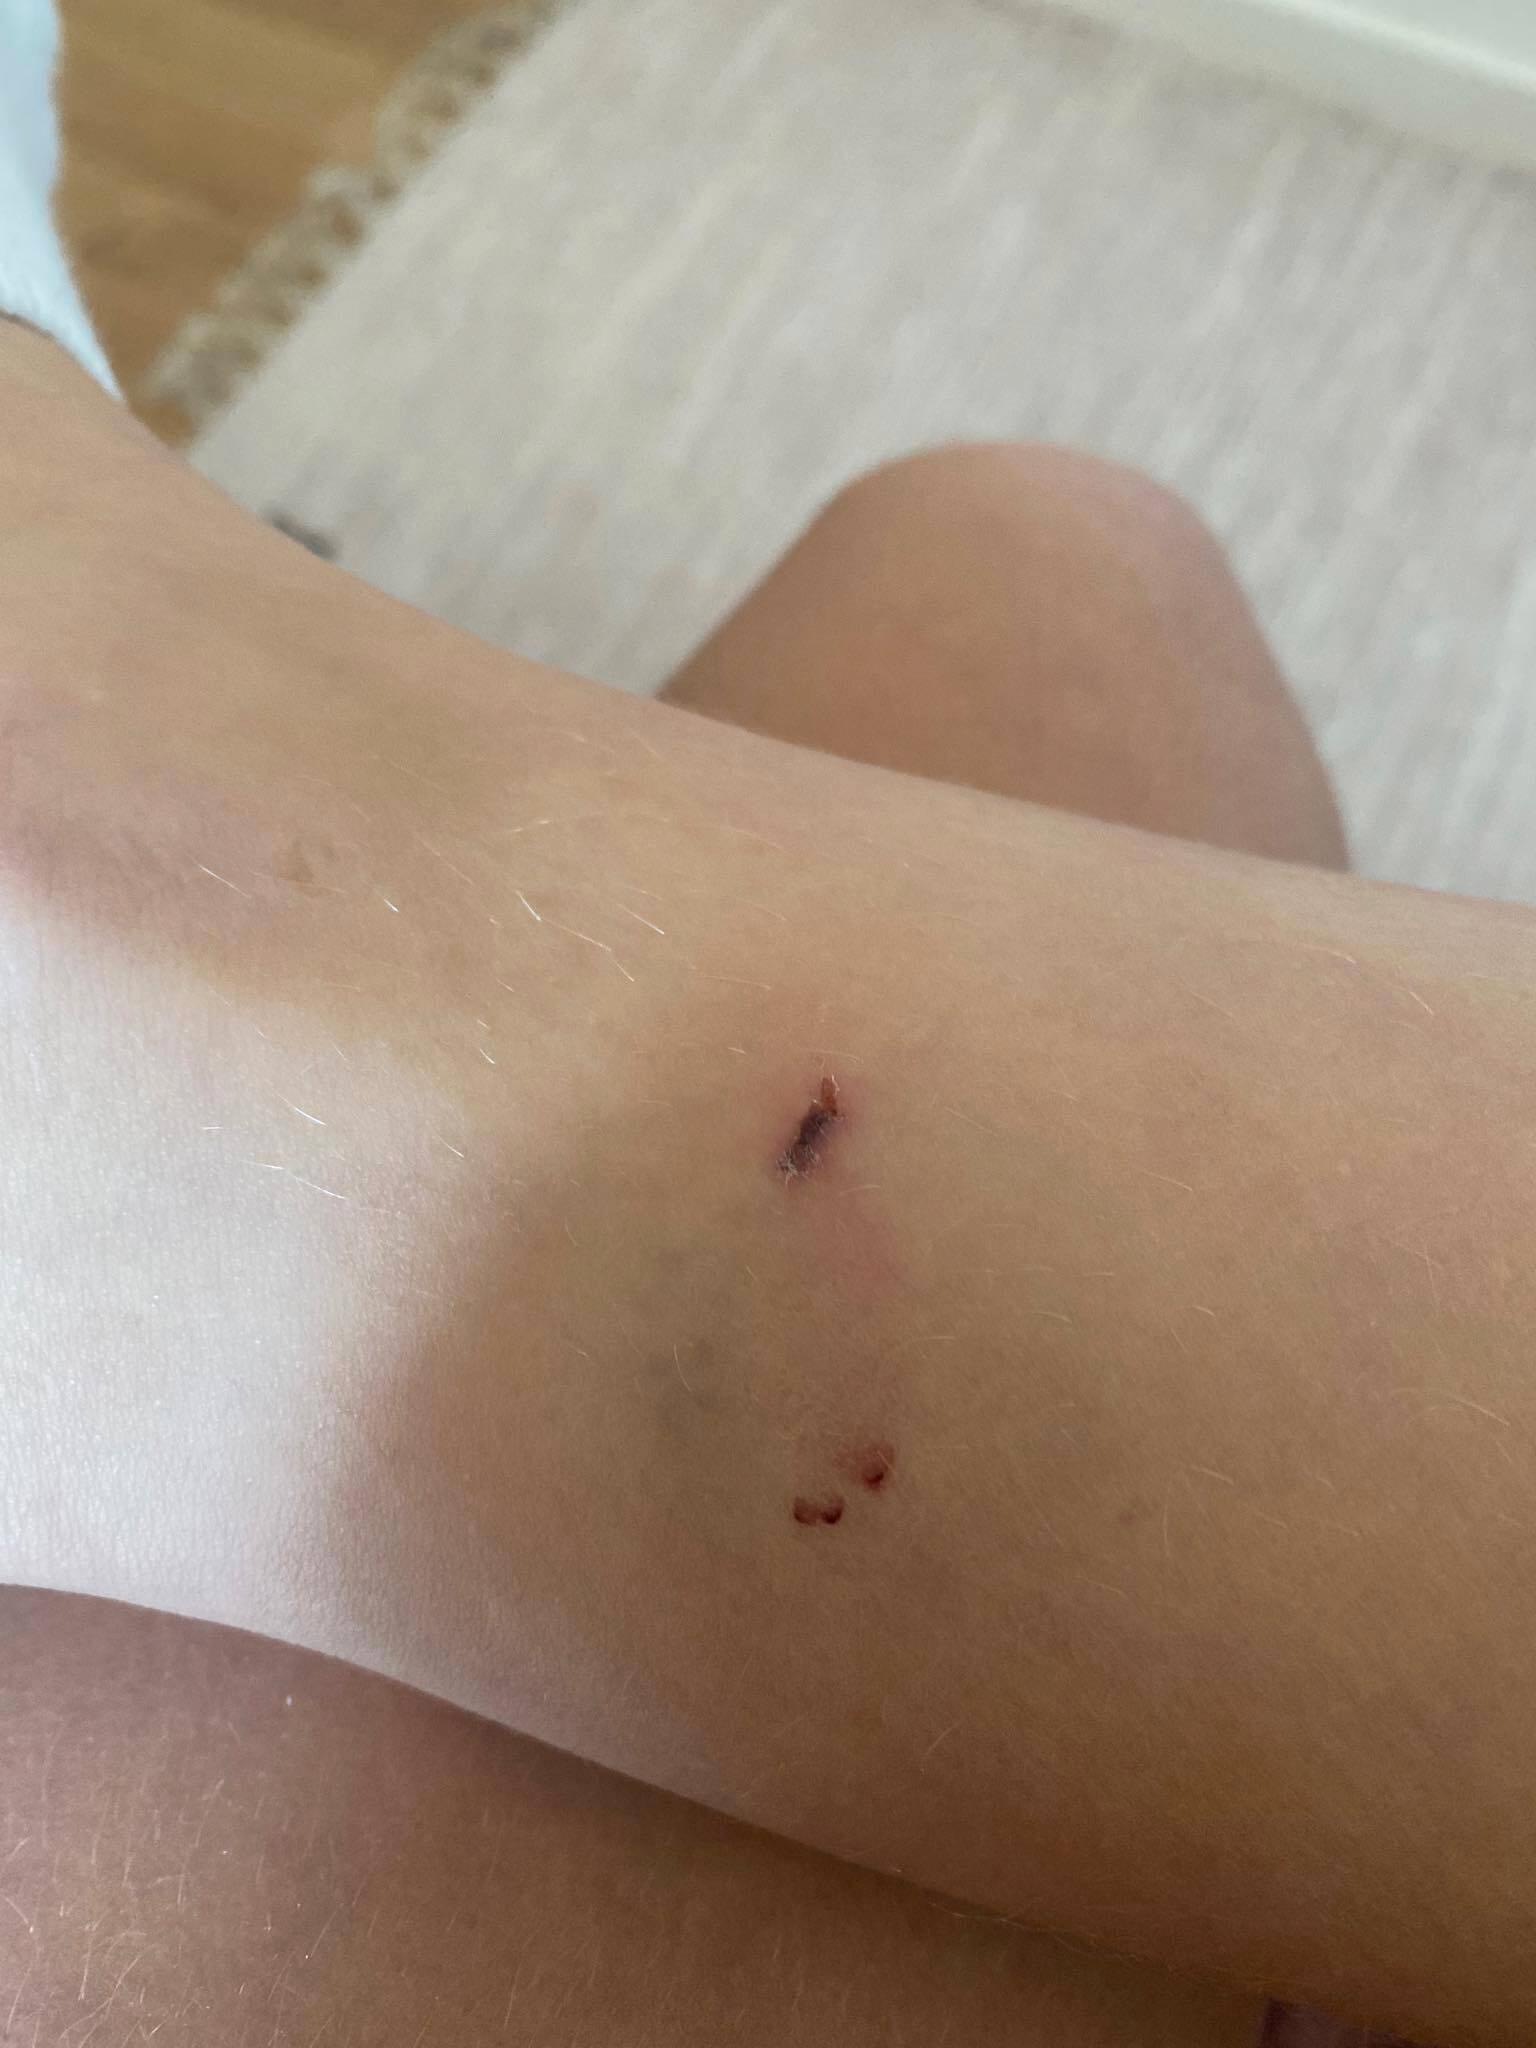 ”Man kan se märken från råttänderna”, säger Jennifer Mikkelsen om såren på benet.